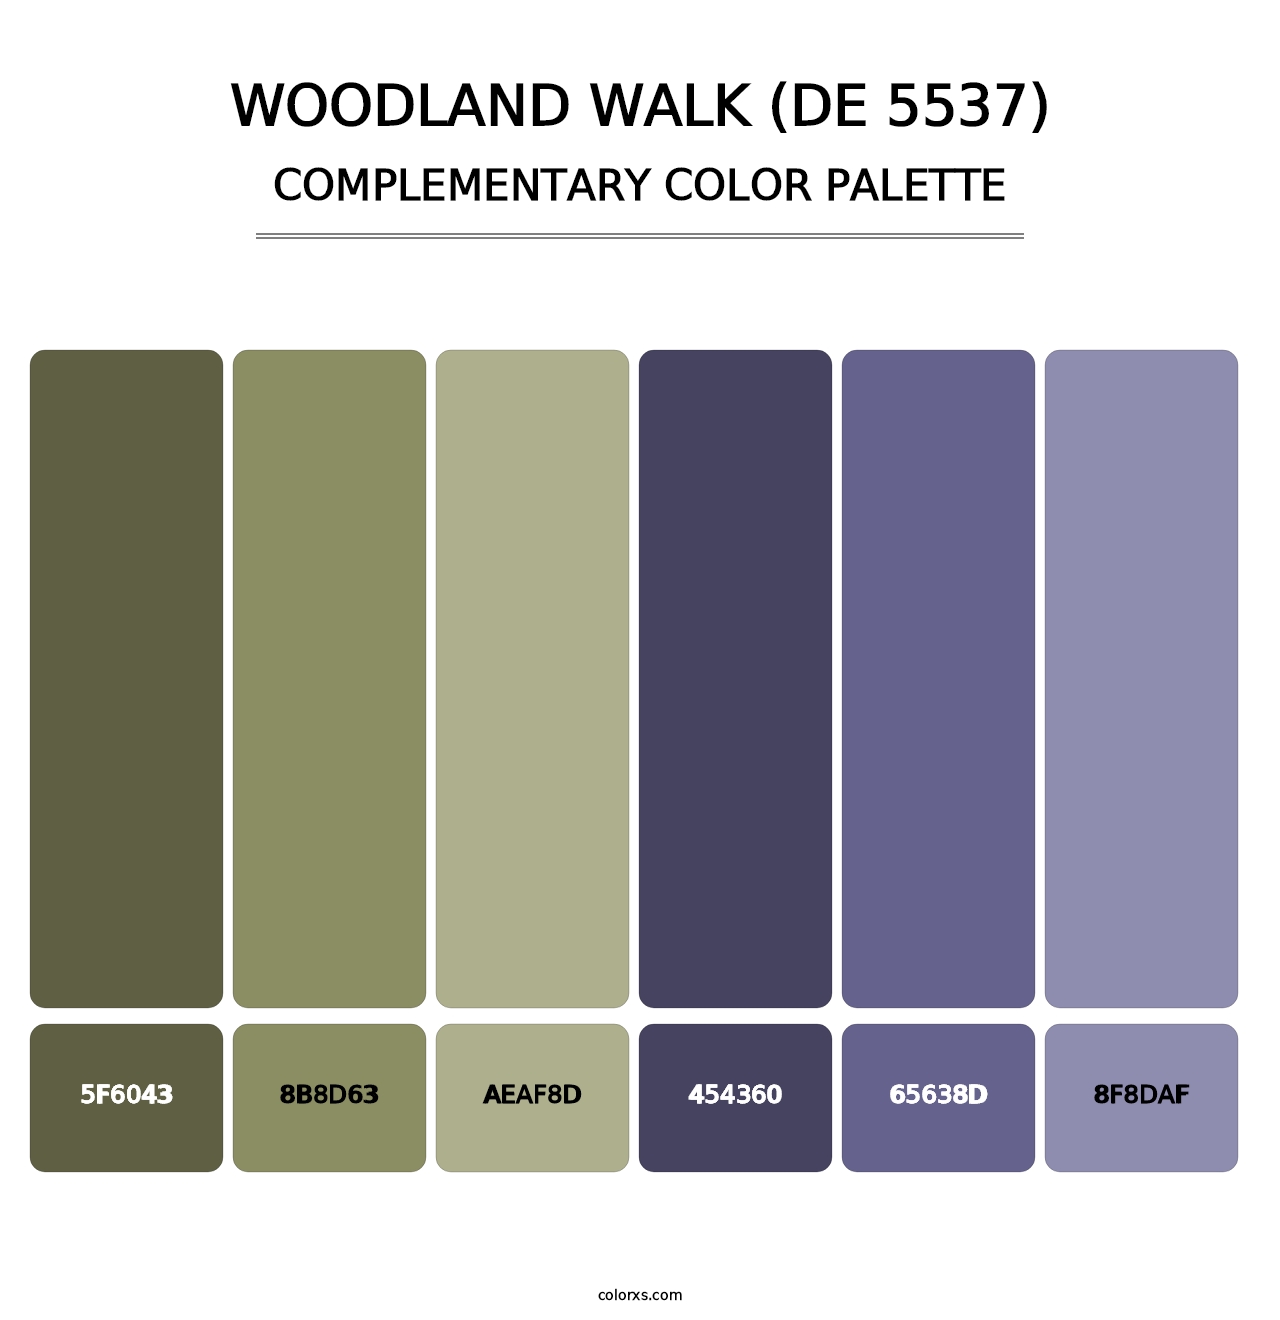 Woodland Walk (DE 5537) - Complementary Color Palette